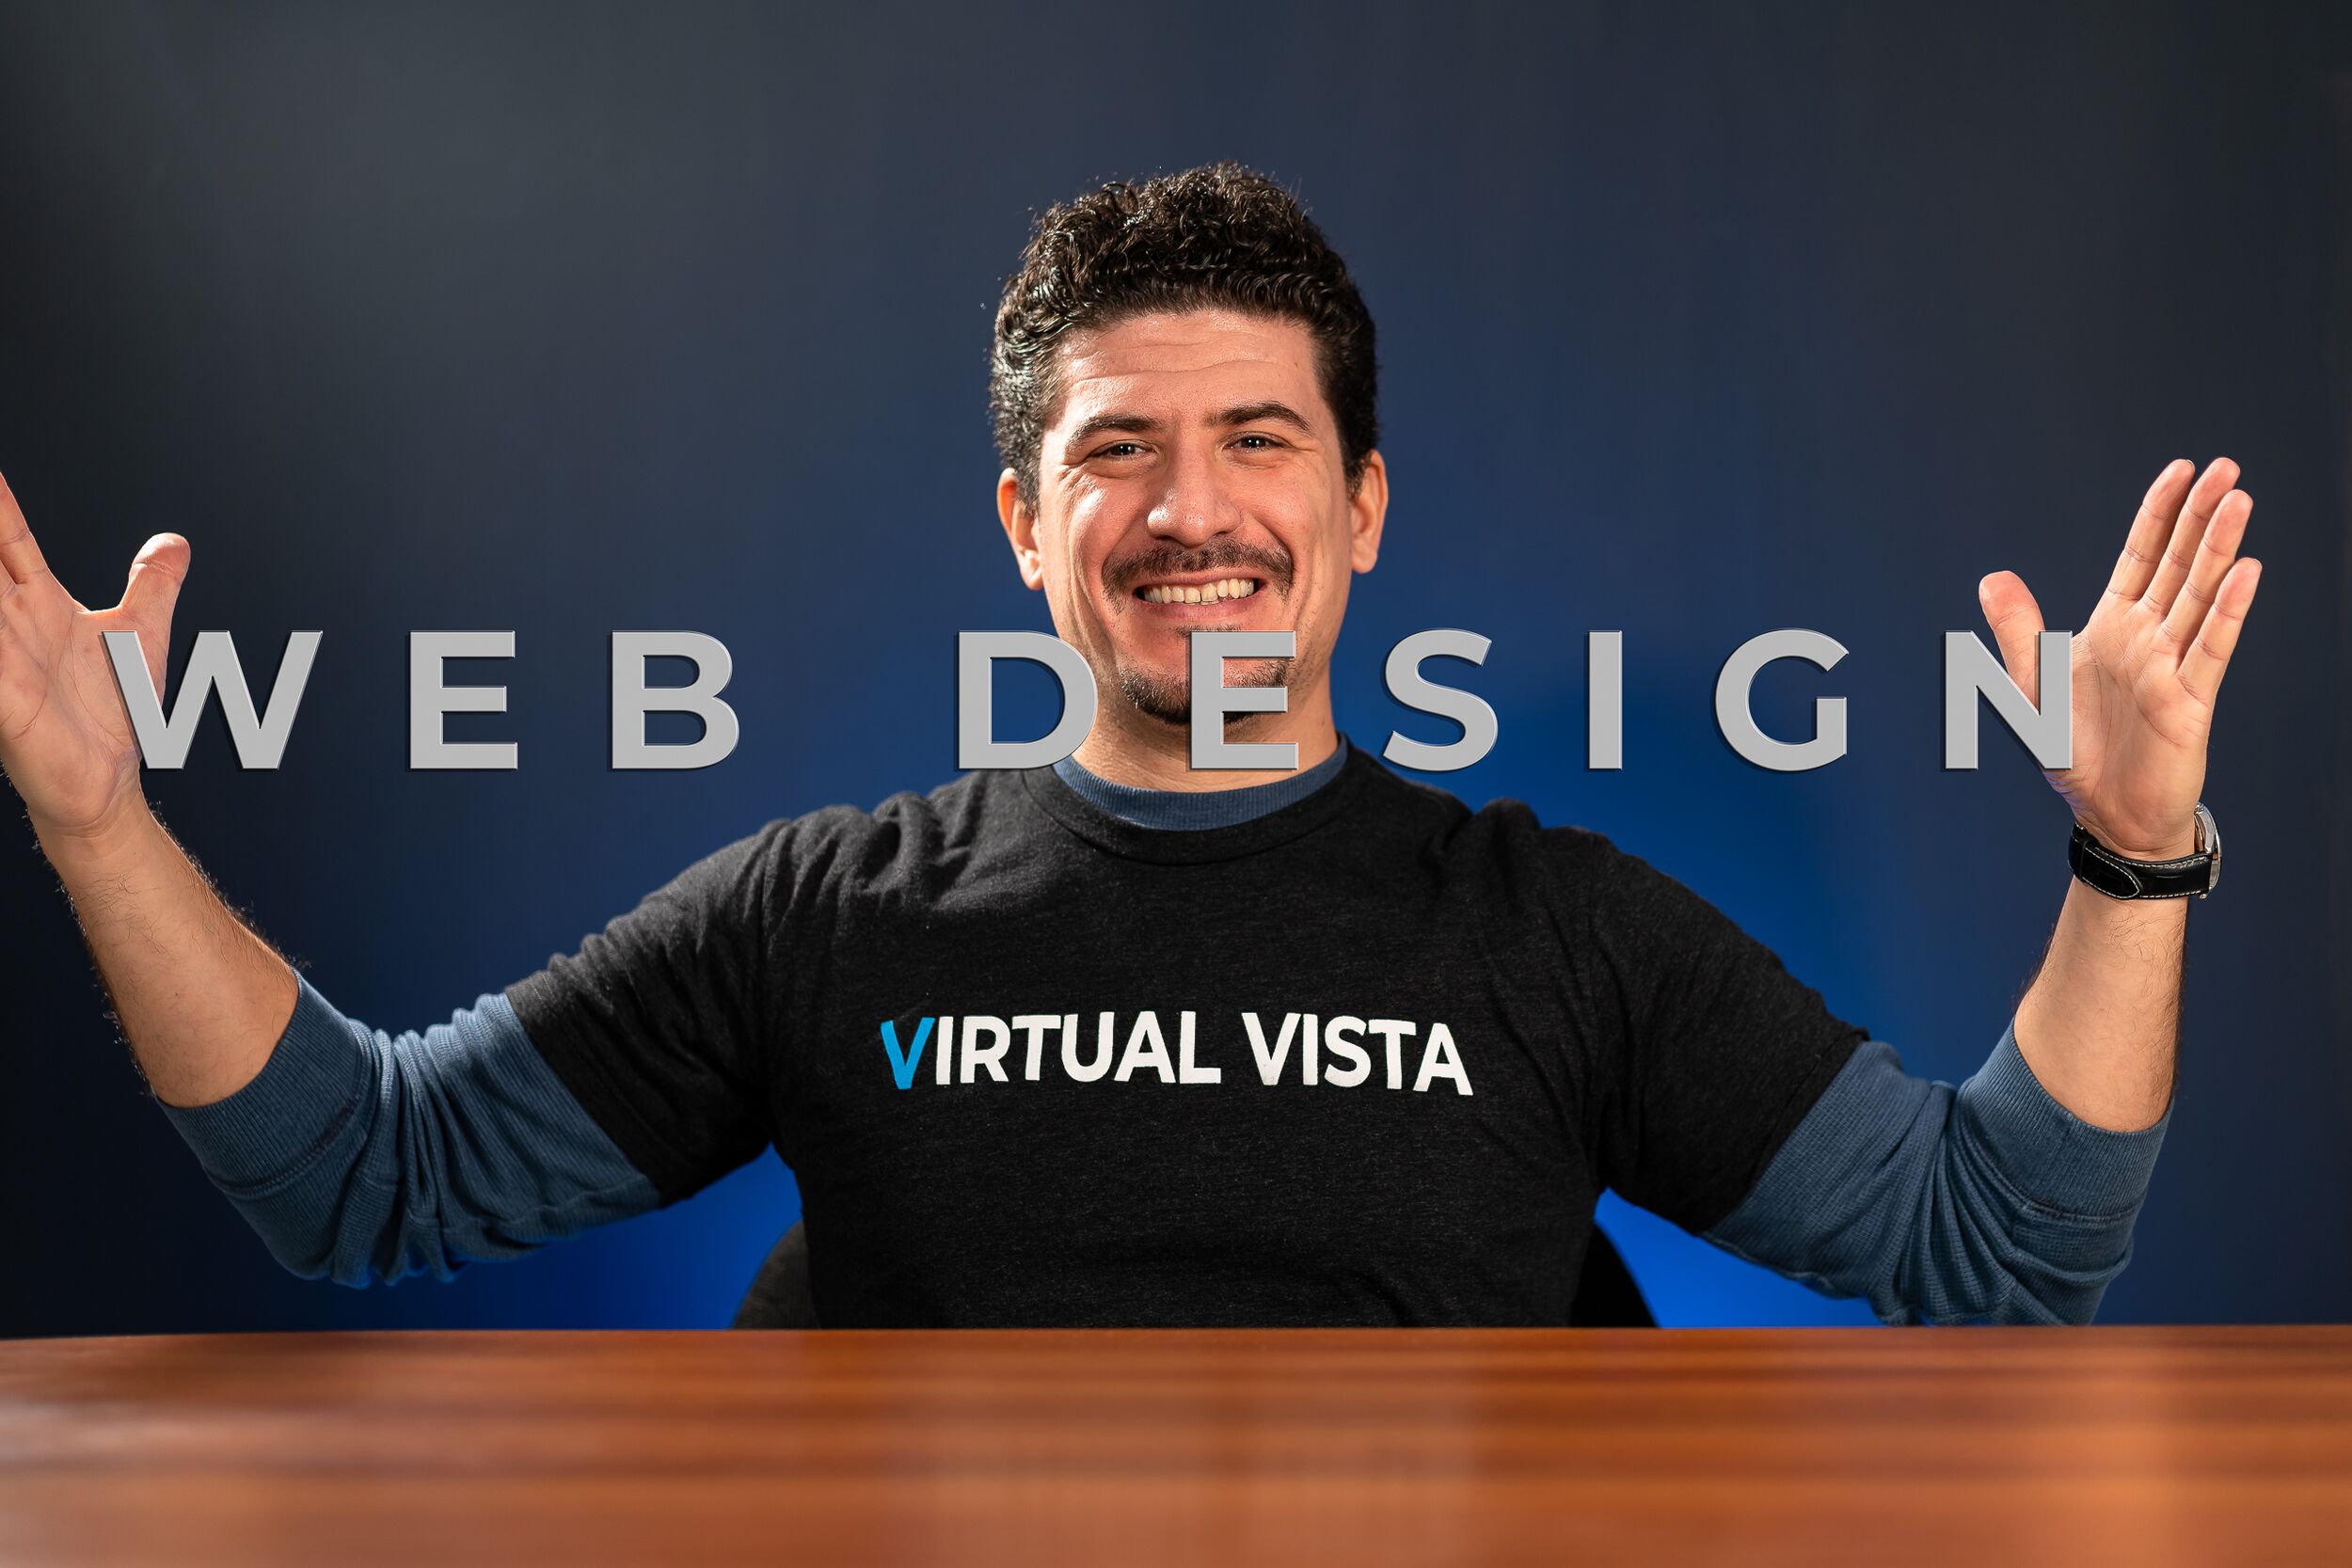 Web Design Presentation by Brian Castro